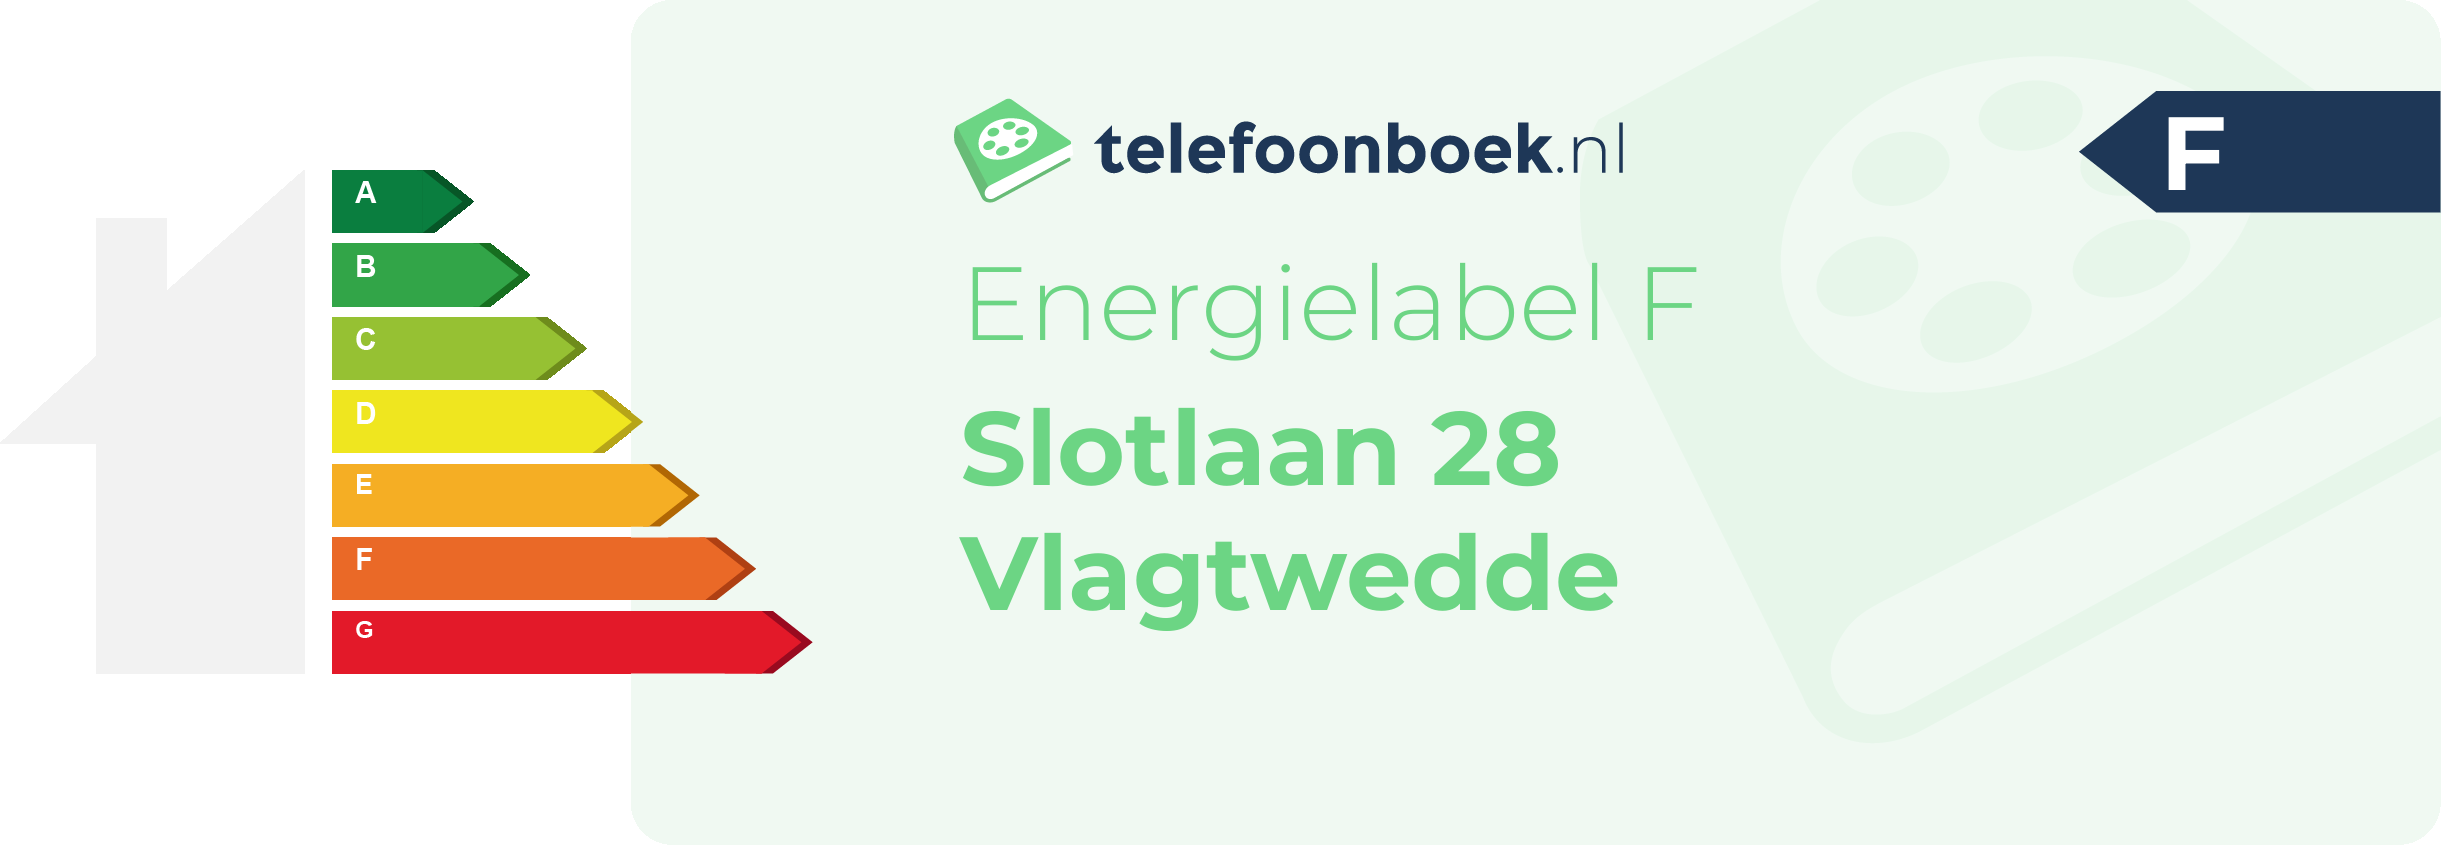 Energielabel Slotlaan 28 Vlagtwedde